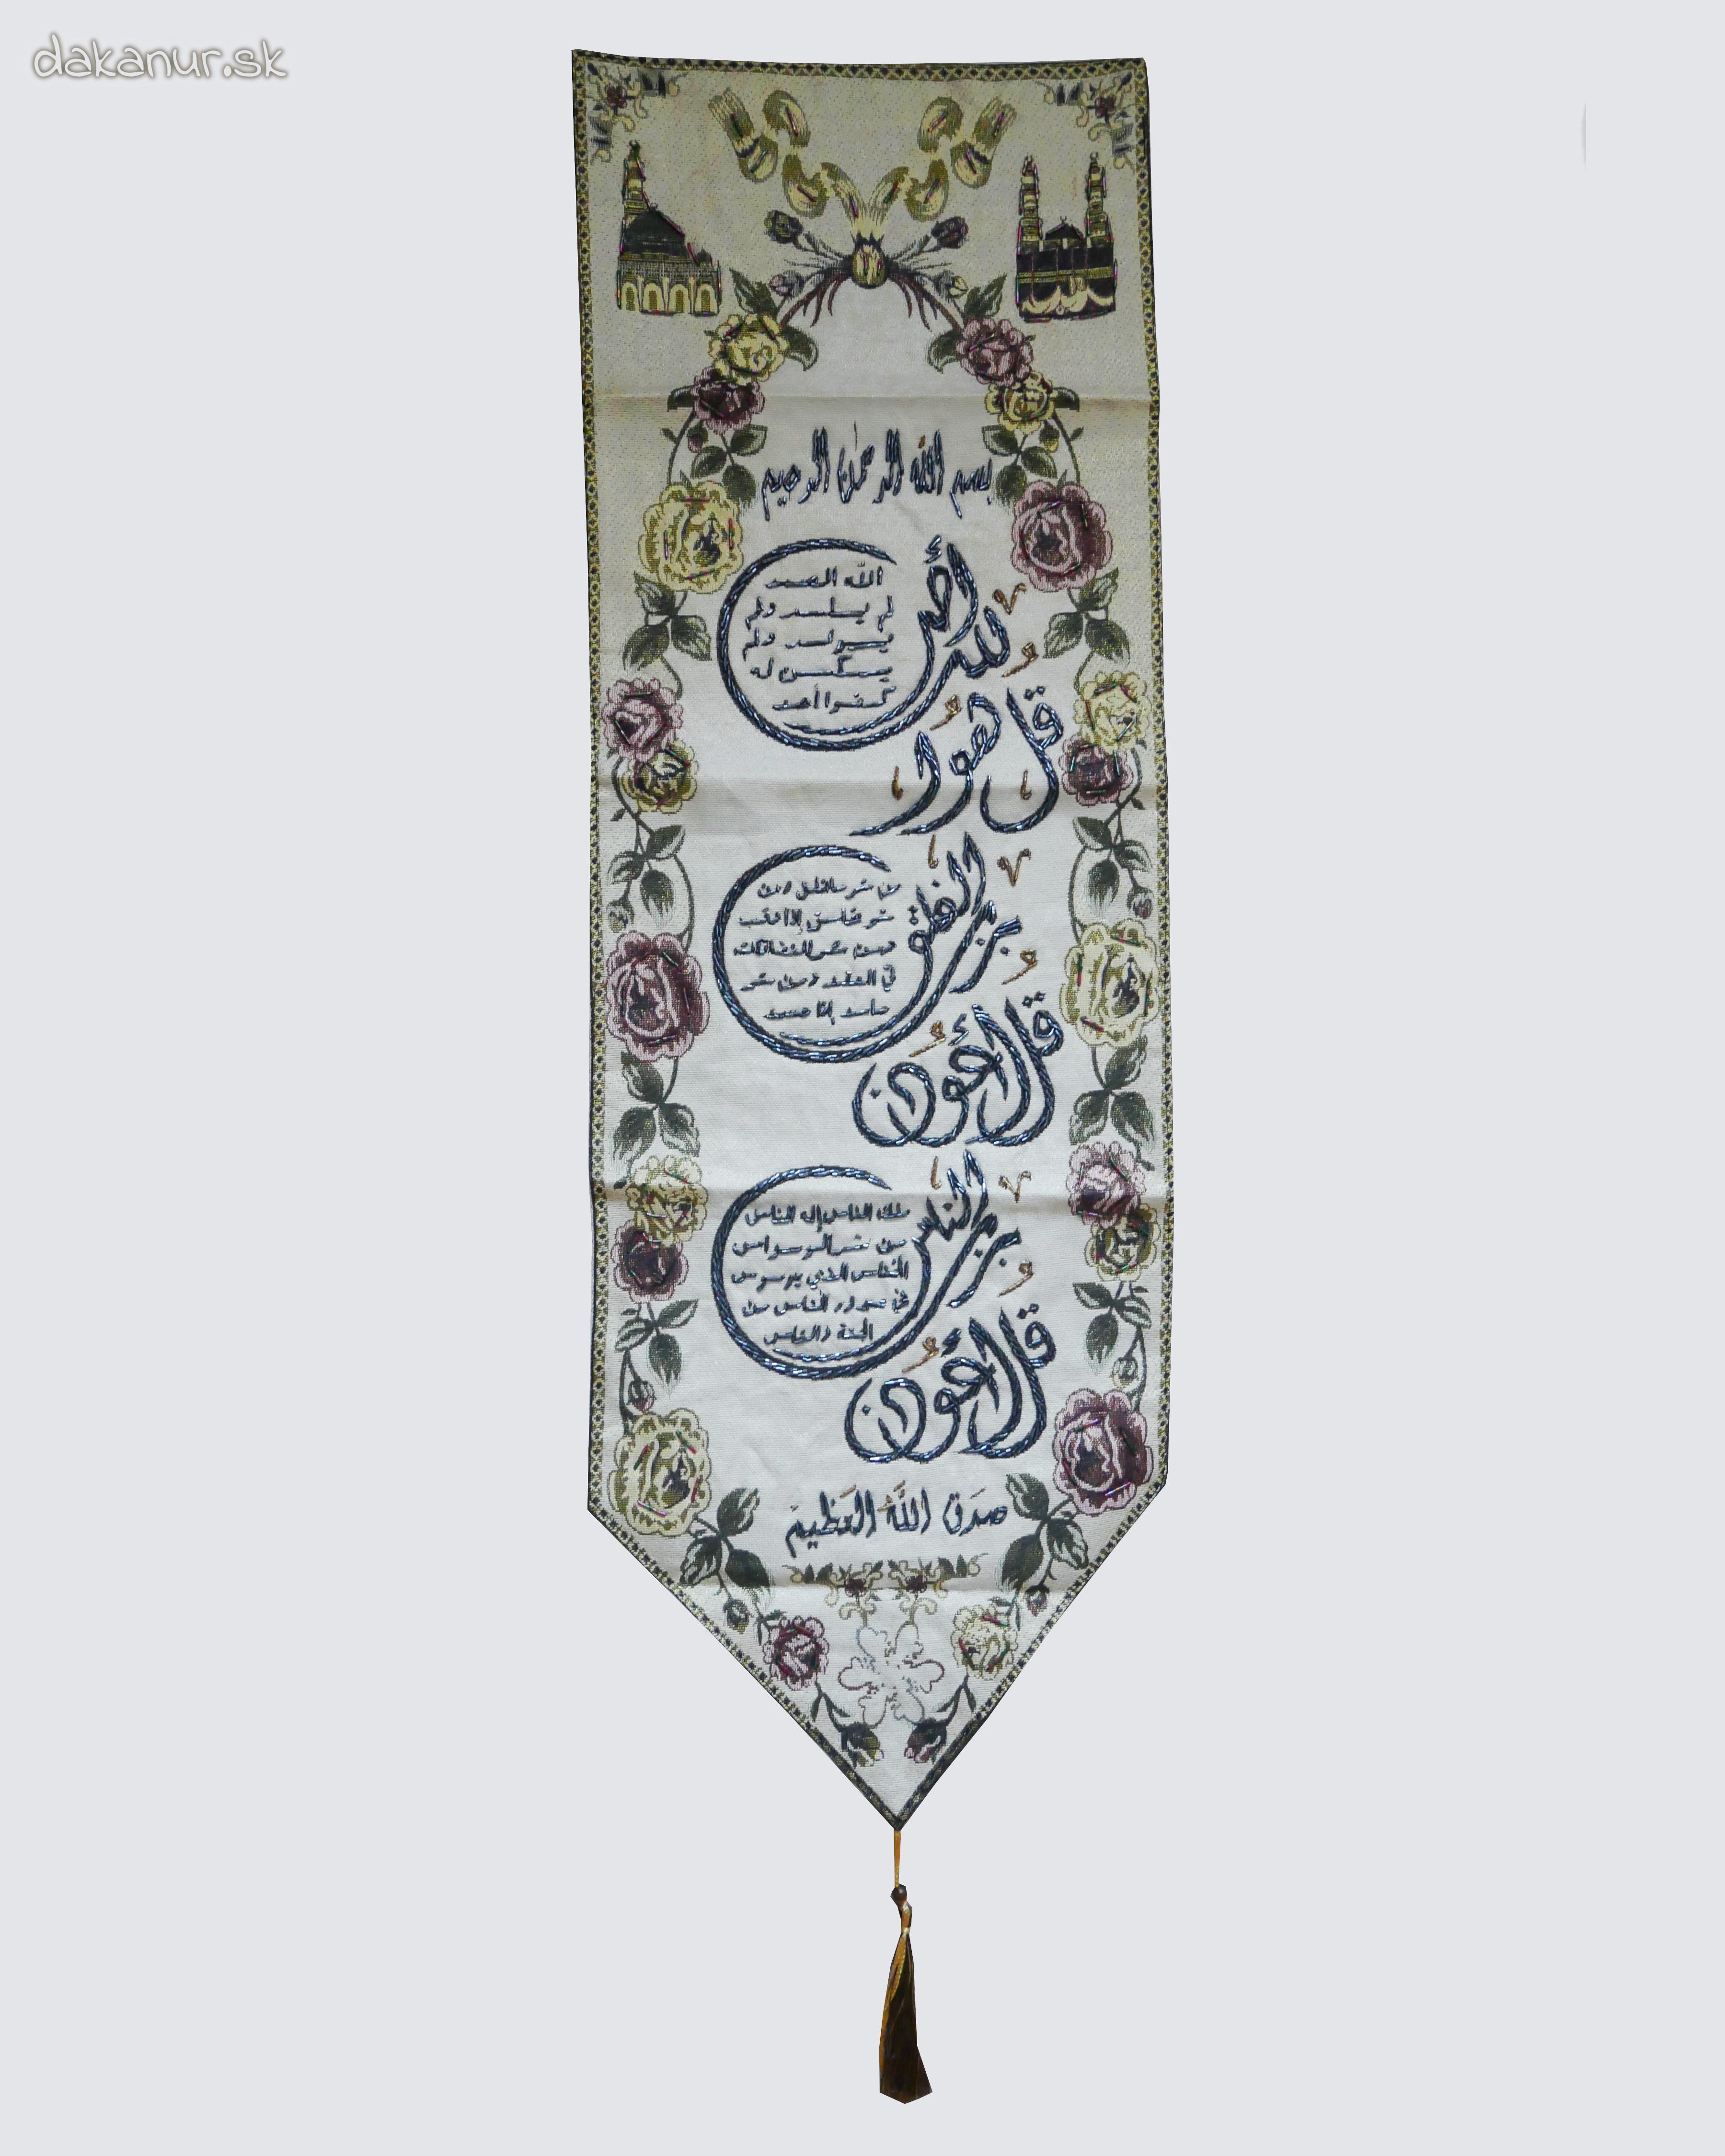 Gobelín, islamská kaligrafia - 3 súry Koránu, s korálkami